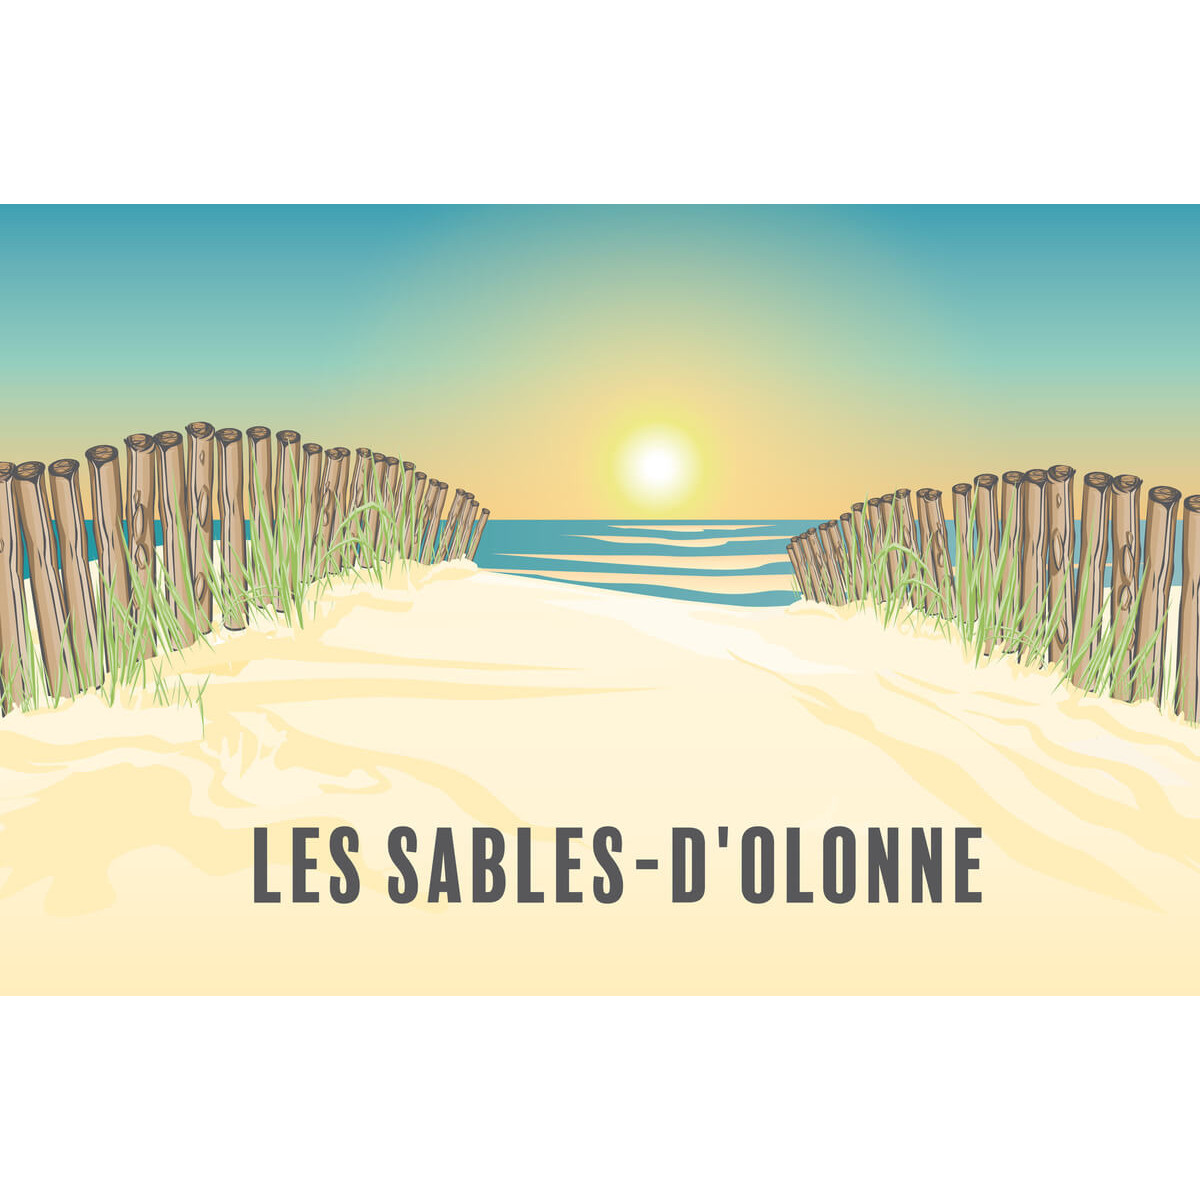 Tableau sur toile illustration chemin Sables-d'Olonne 45x65 cm